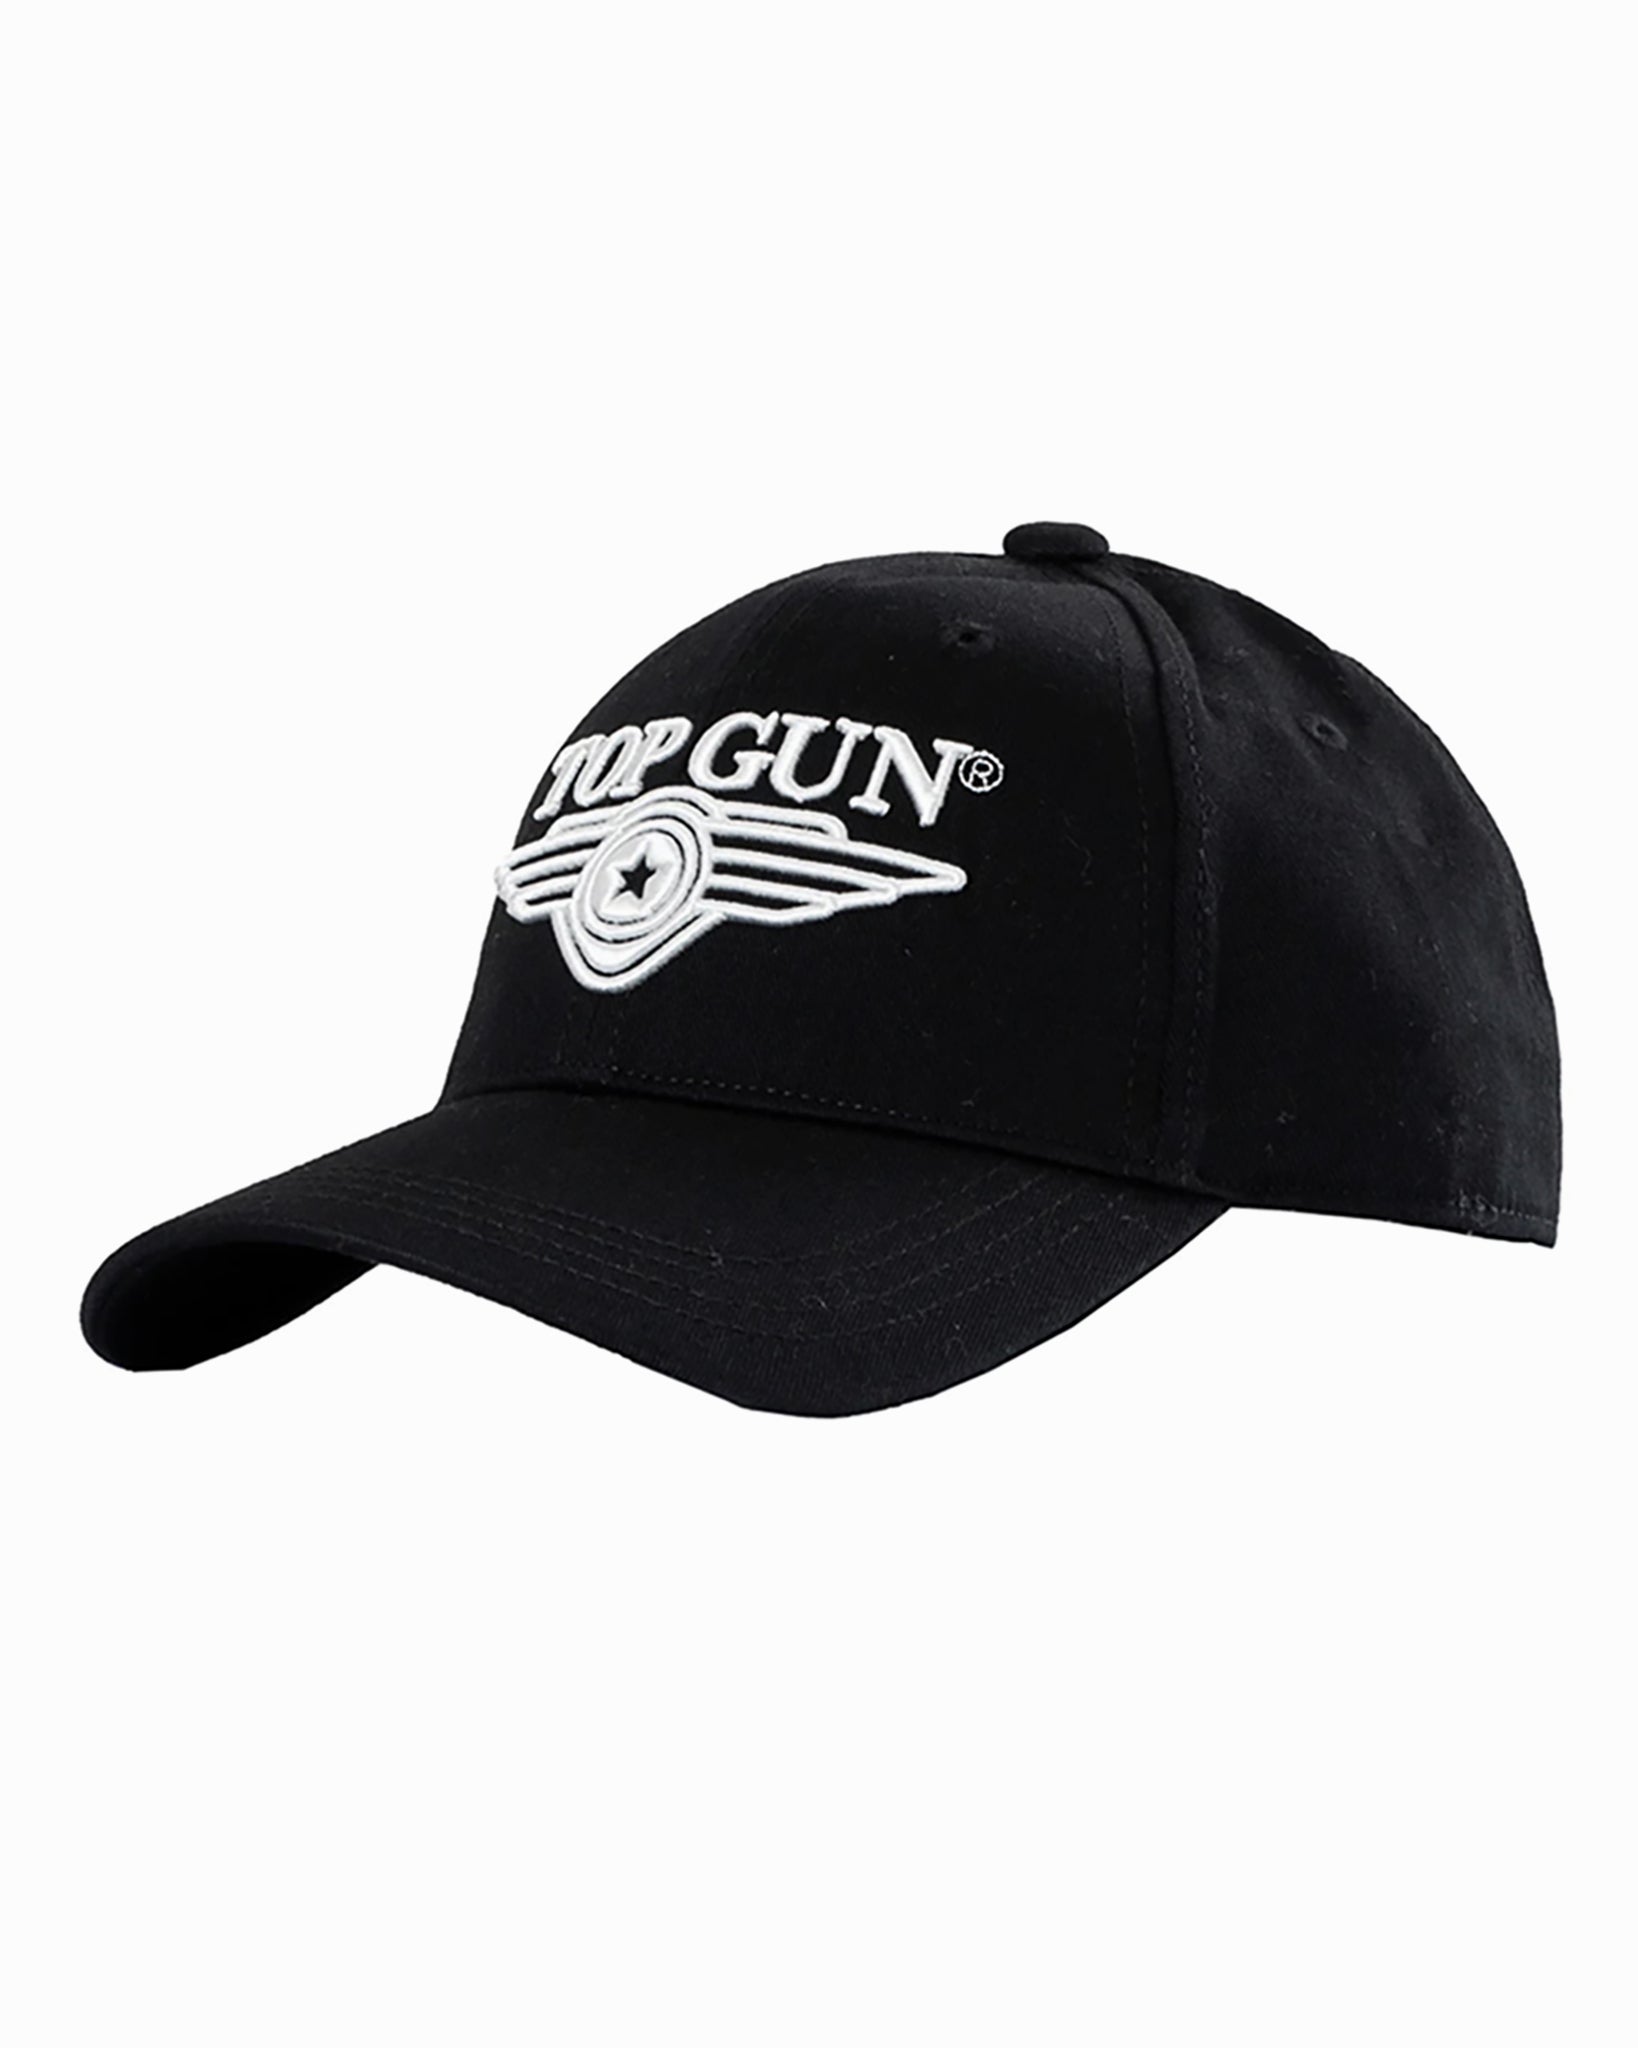 TOP GUN® 3D WINGS Top – CAP LOGO Gun Store